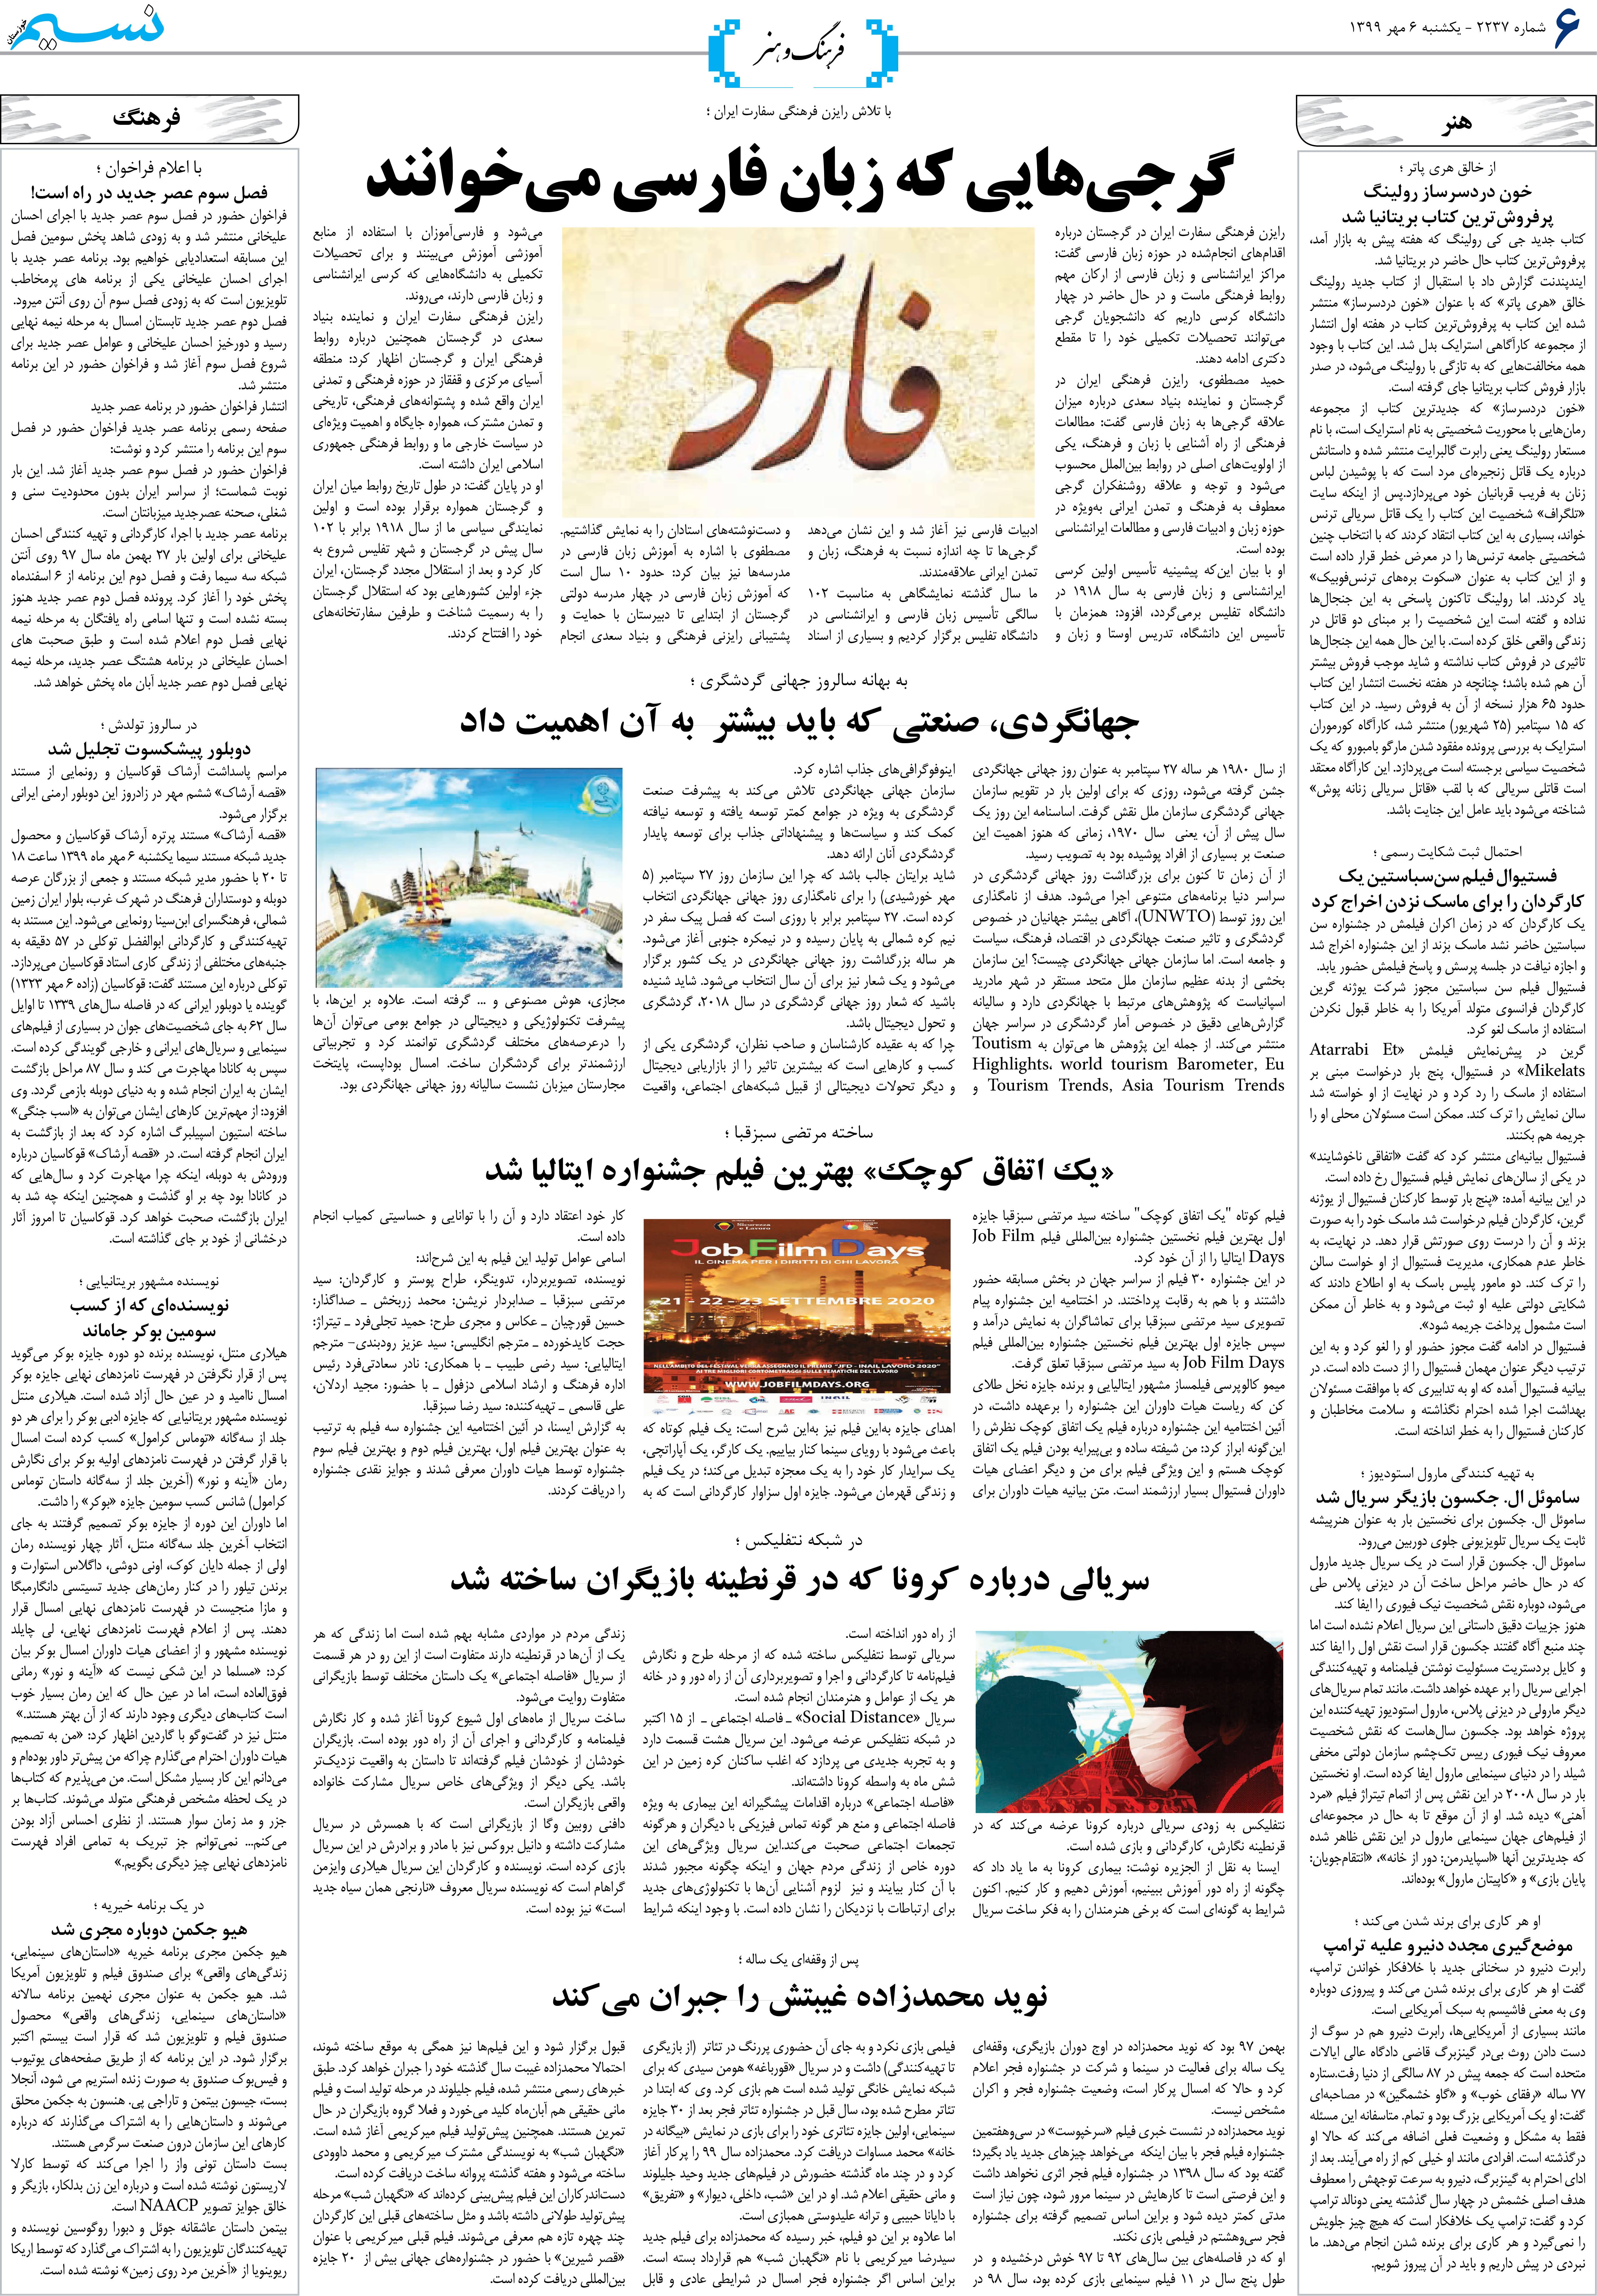 صفحه فرهنگ و هنر روزنامه نسیم شماره 2237